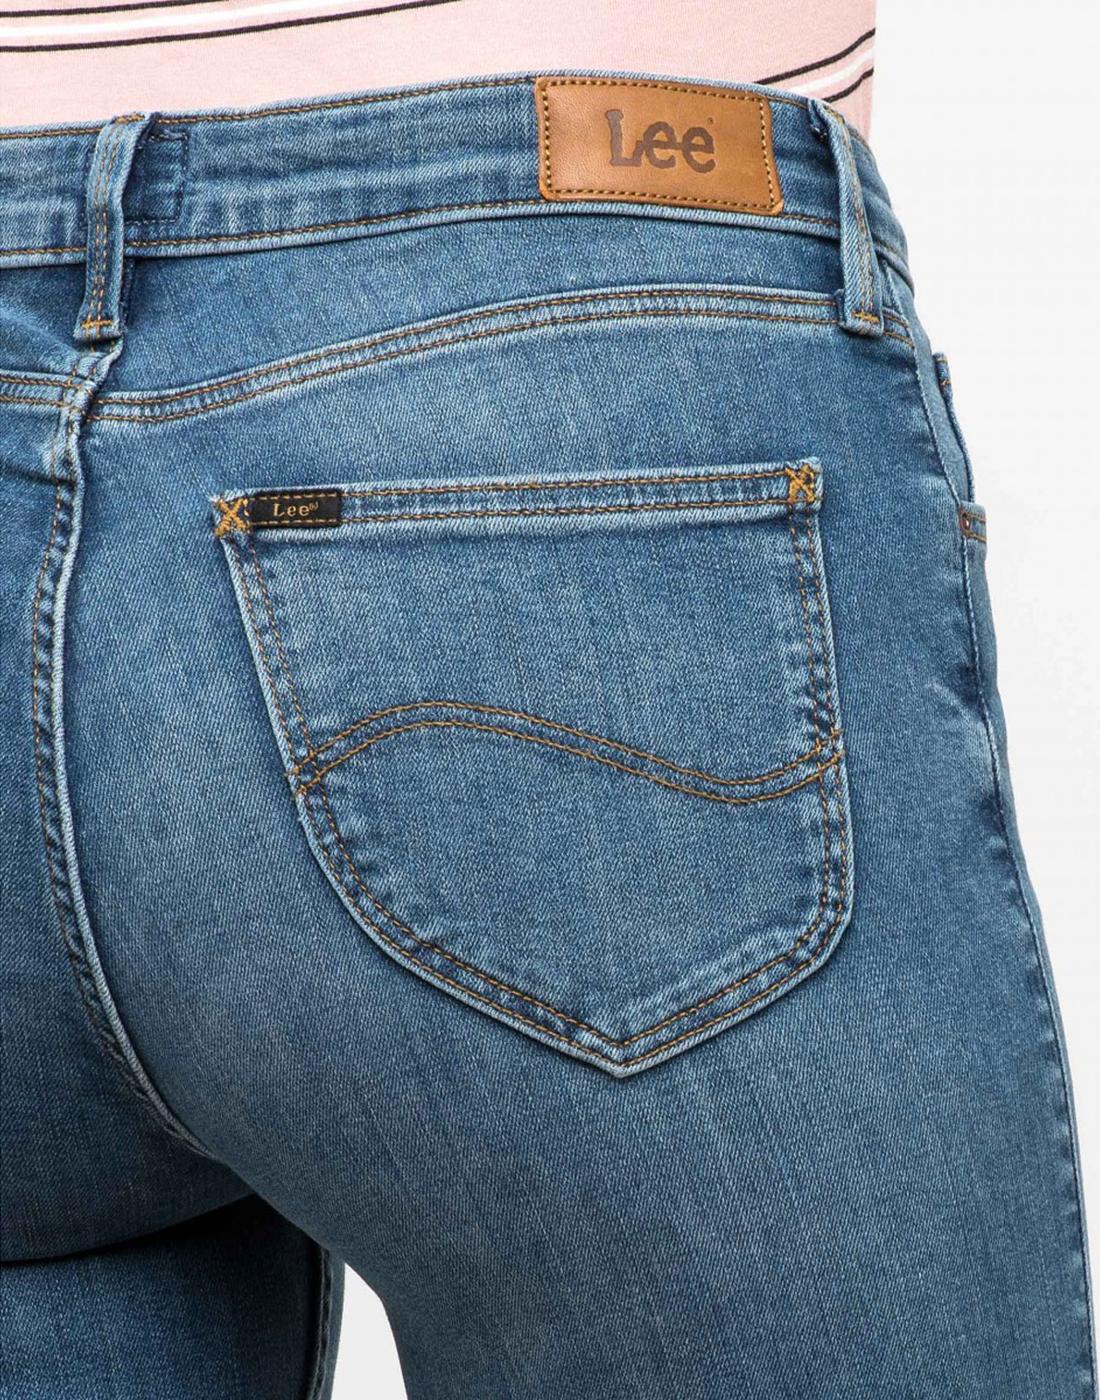 lee women's boot cut jeans